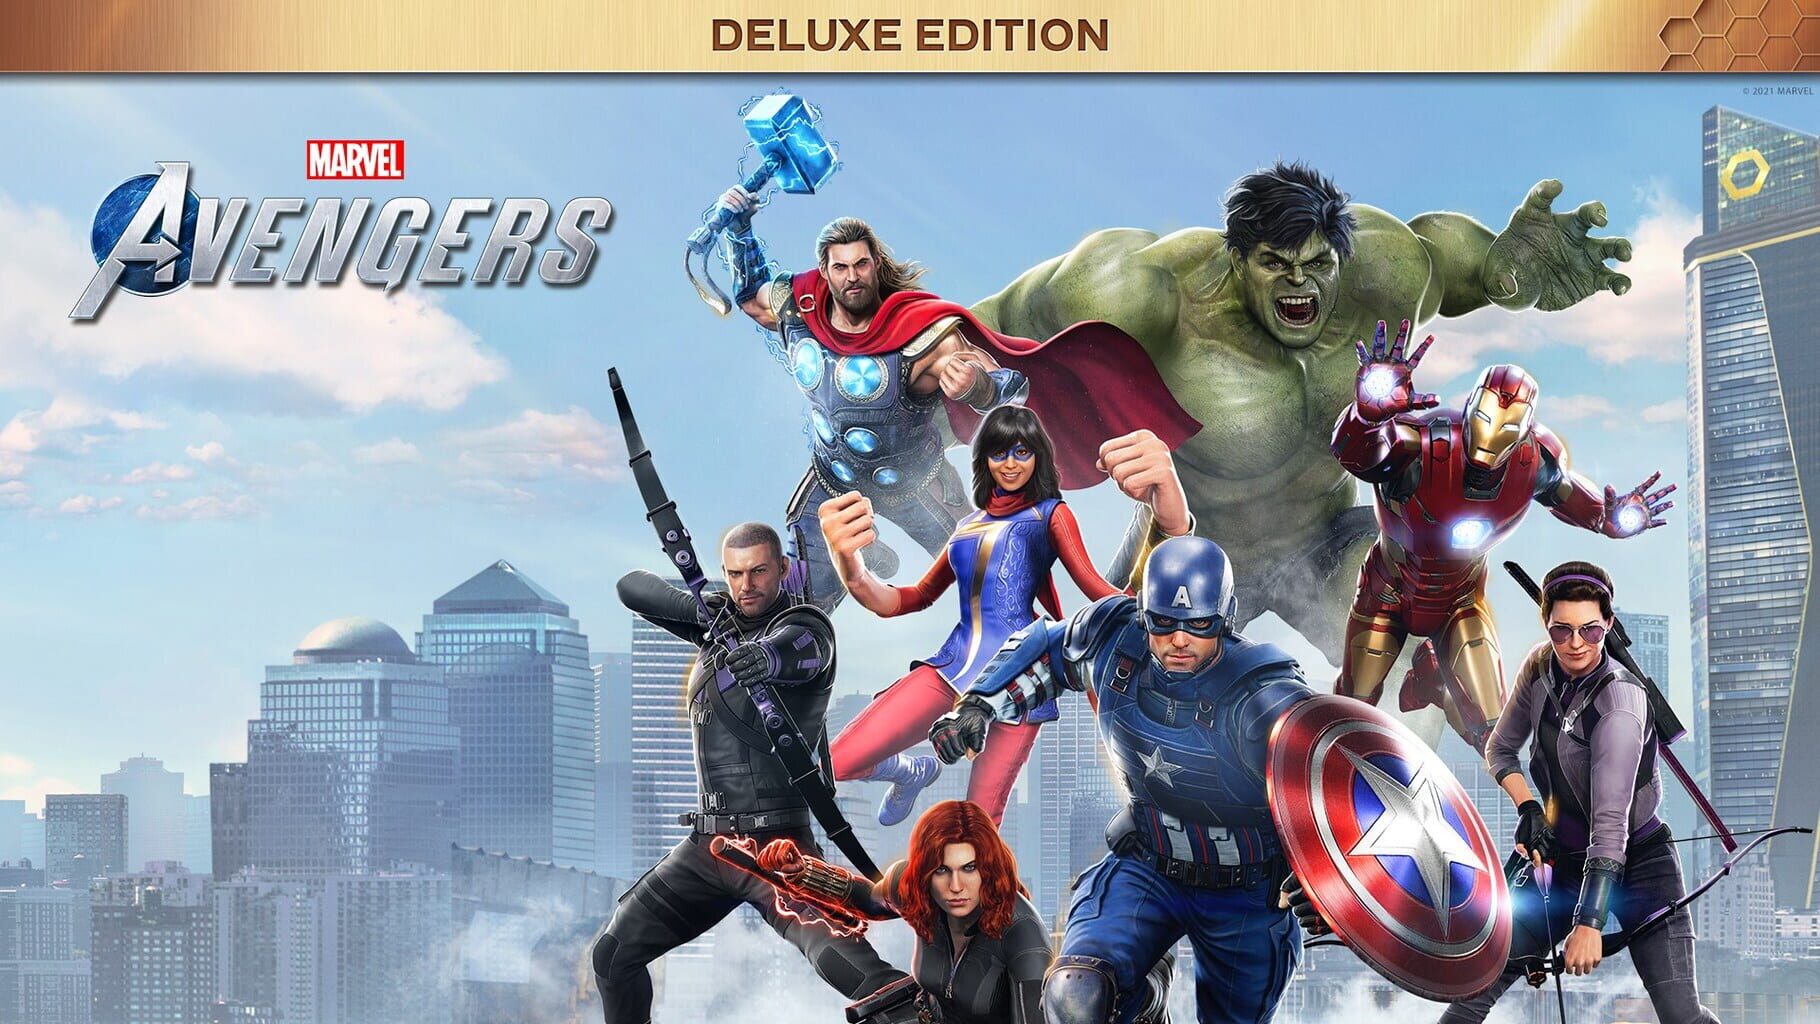 Arte - Marvel's Avengers: Deluxe Edition